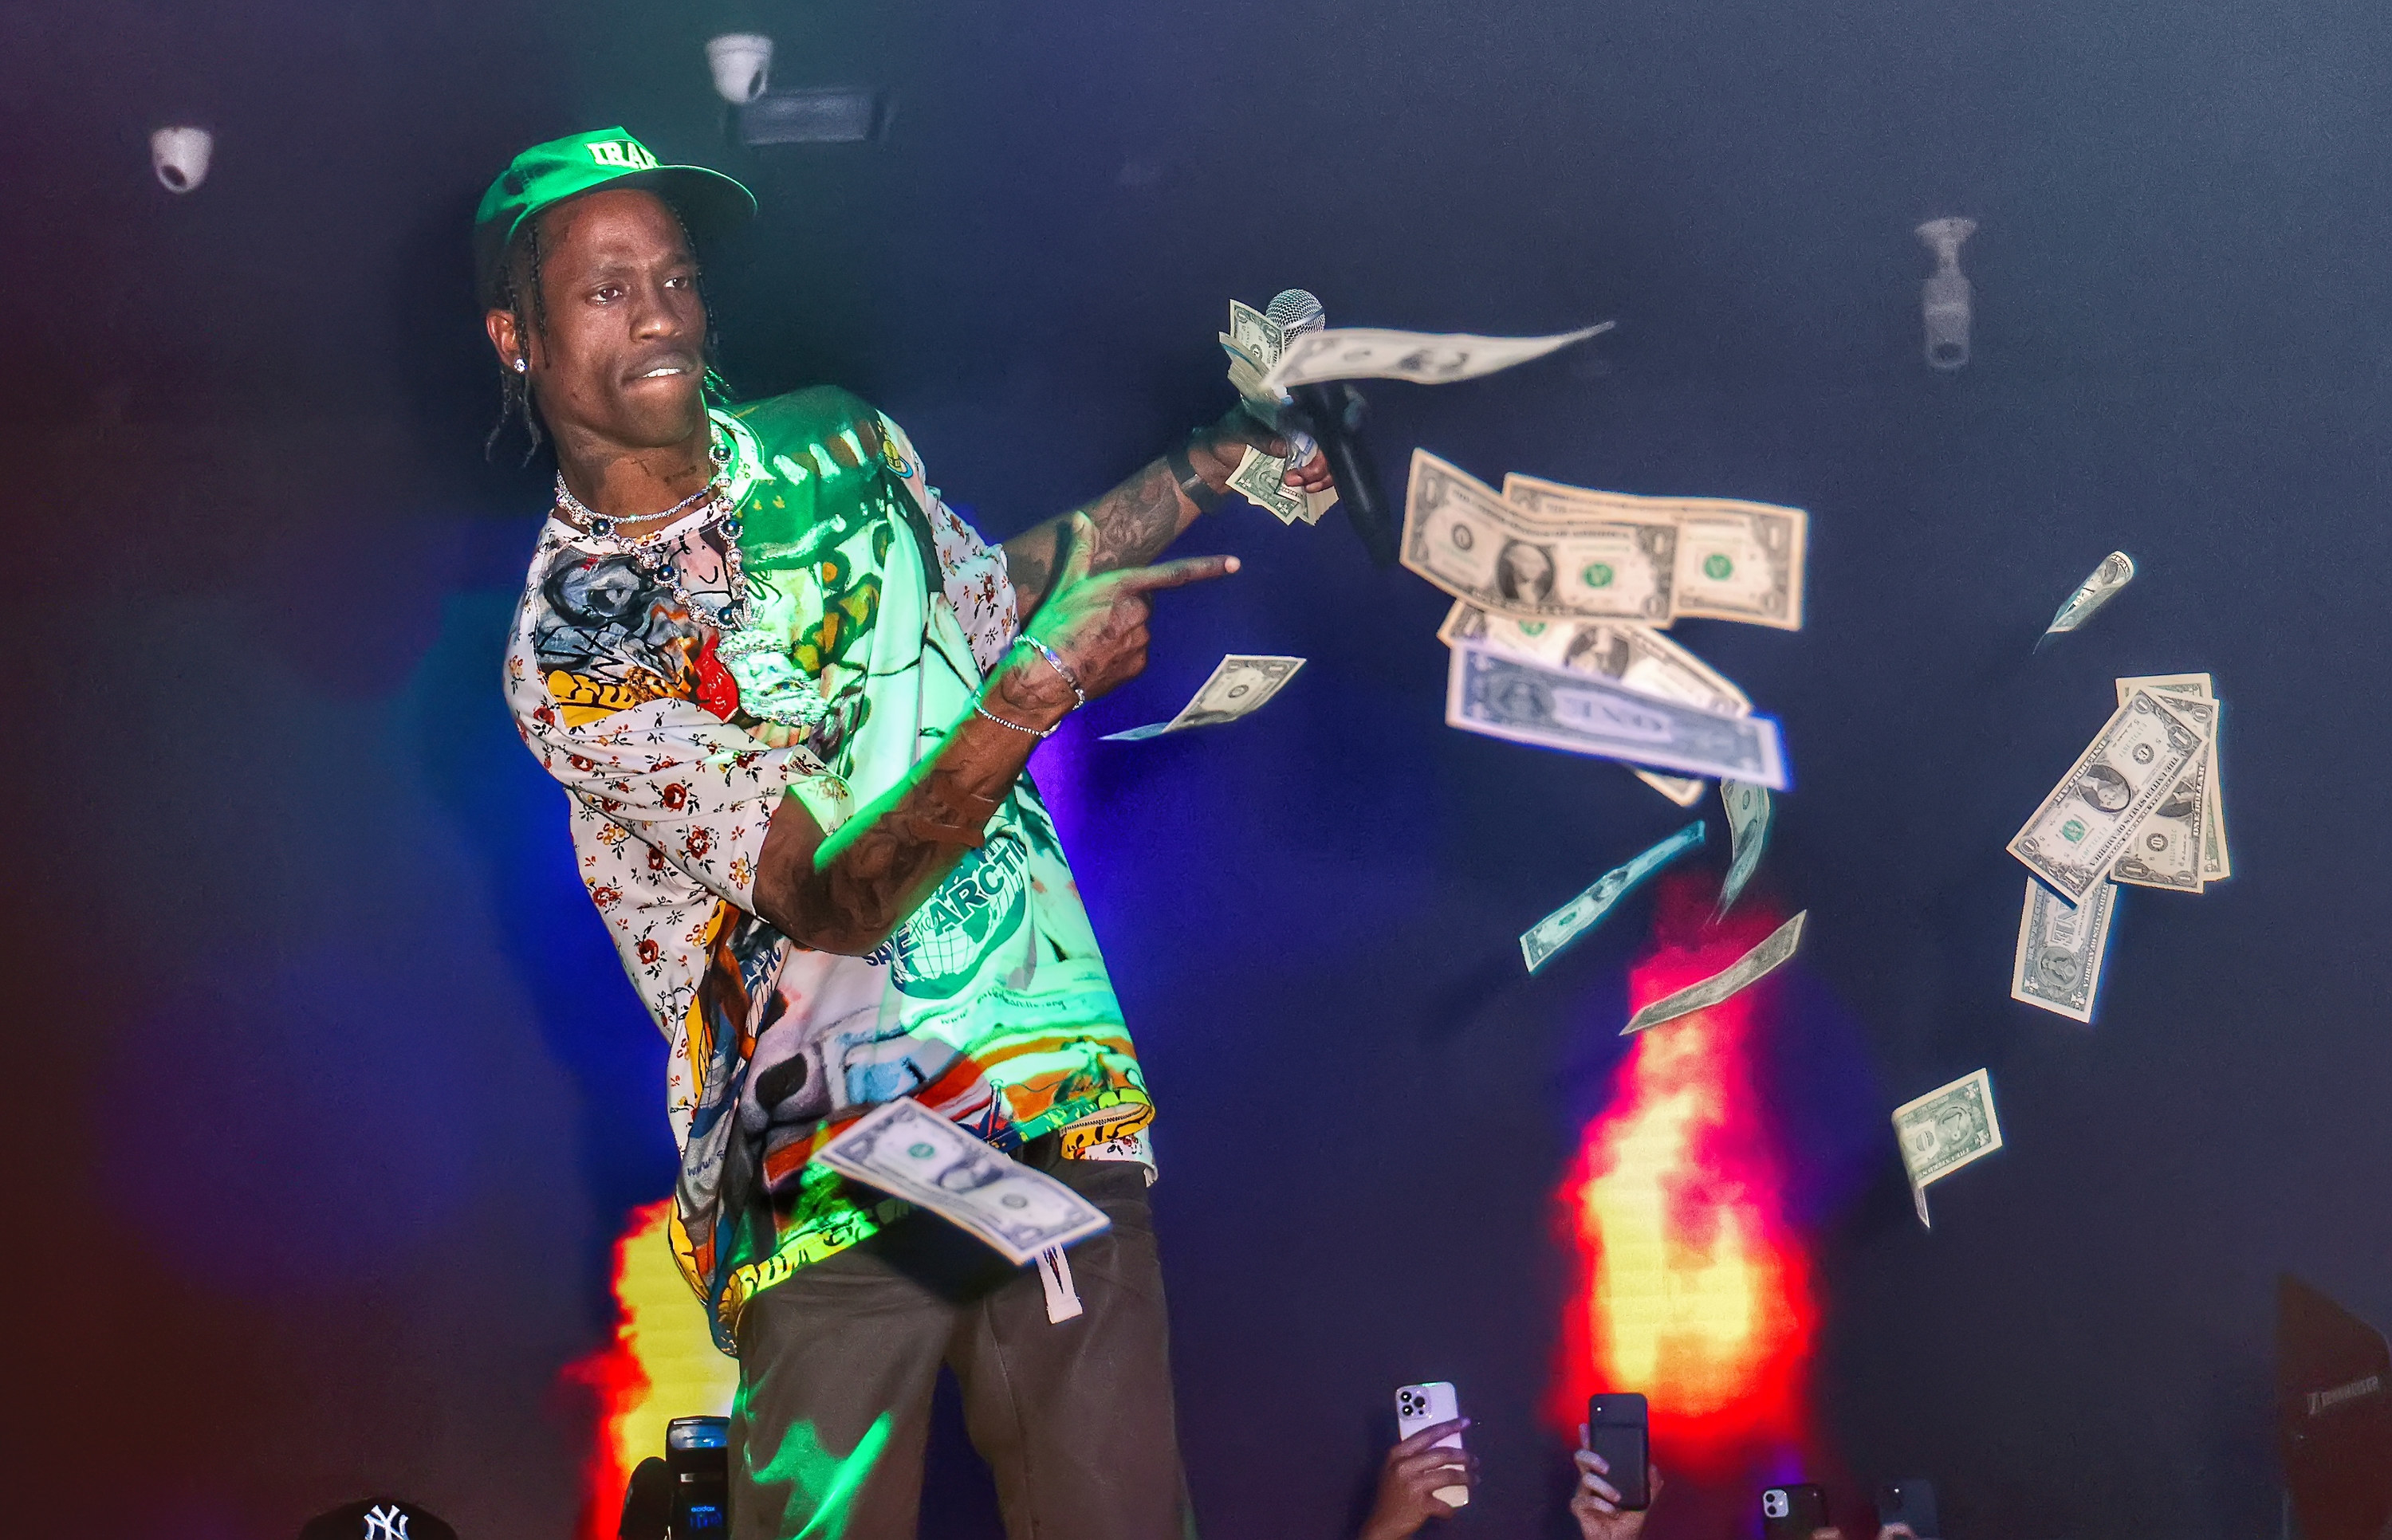 Travis Scott on stage throwing money at the crowd below